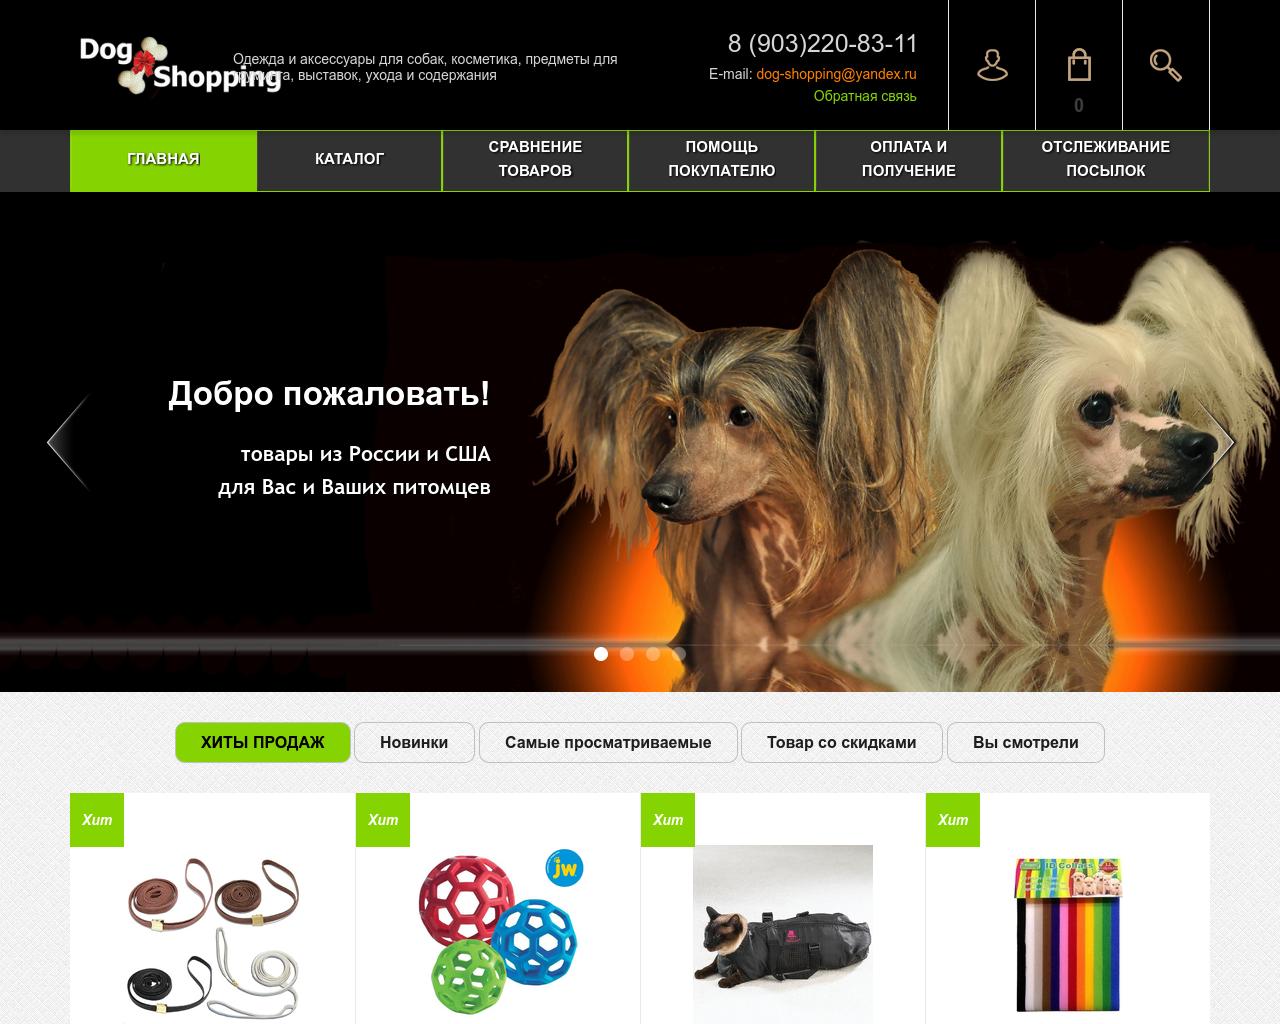 Изображение сайта dog-shopping-lili.ru в разрешении 1280x1024